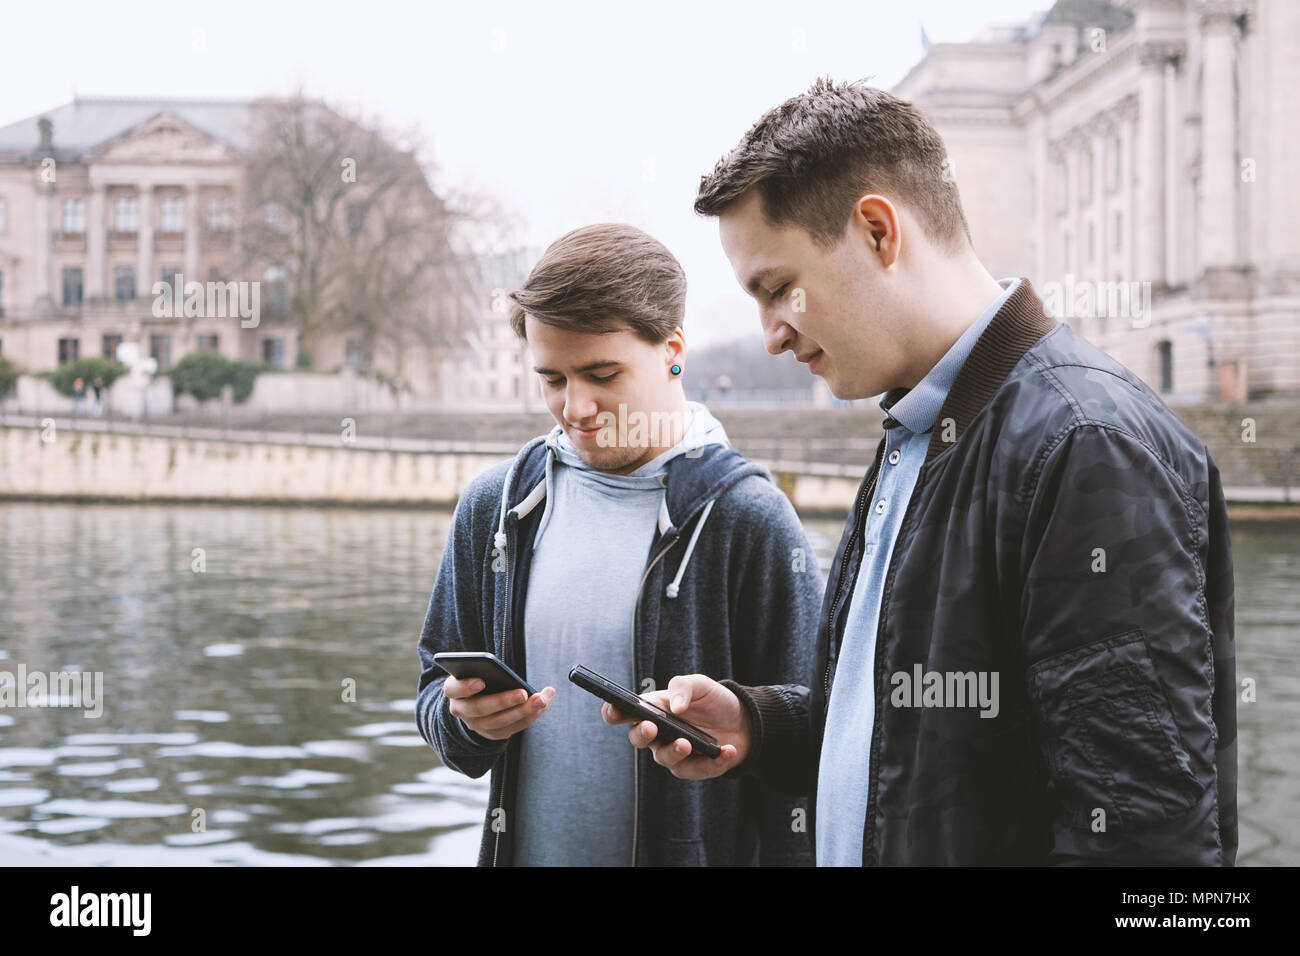 Zwei antisoziale Handy süchtig männliche Jugendliche gemeinsam mit Smartphone, Technik Konzept, städtische Lage am Fluss in Berlin Deutschland Stockfoto